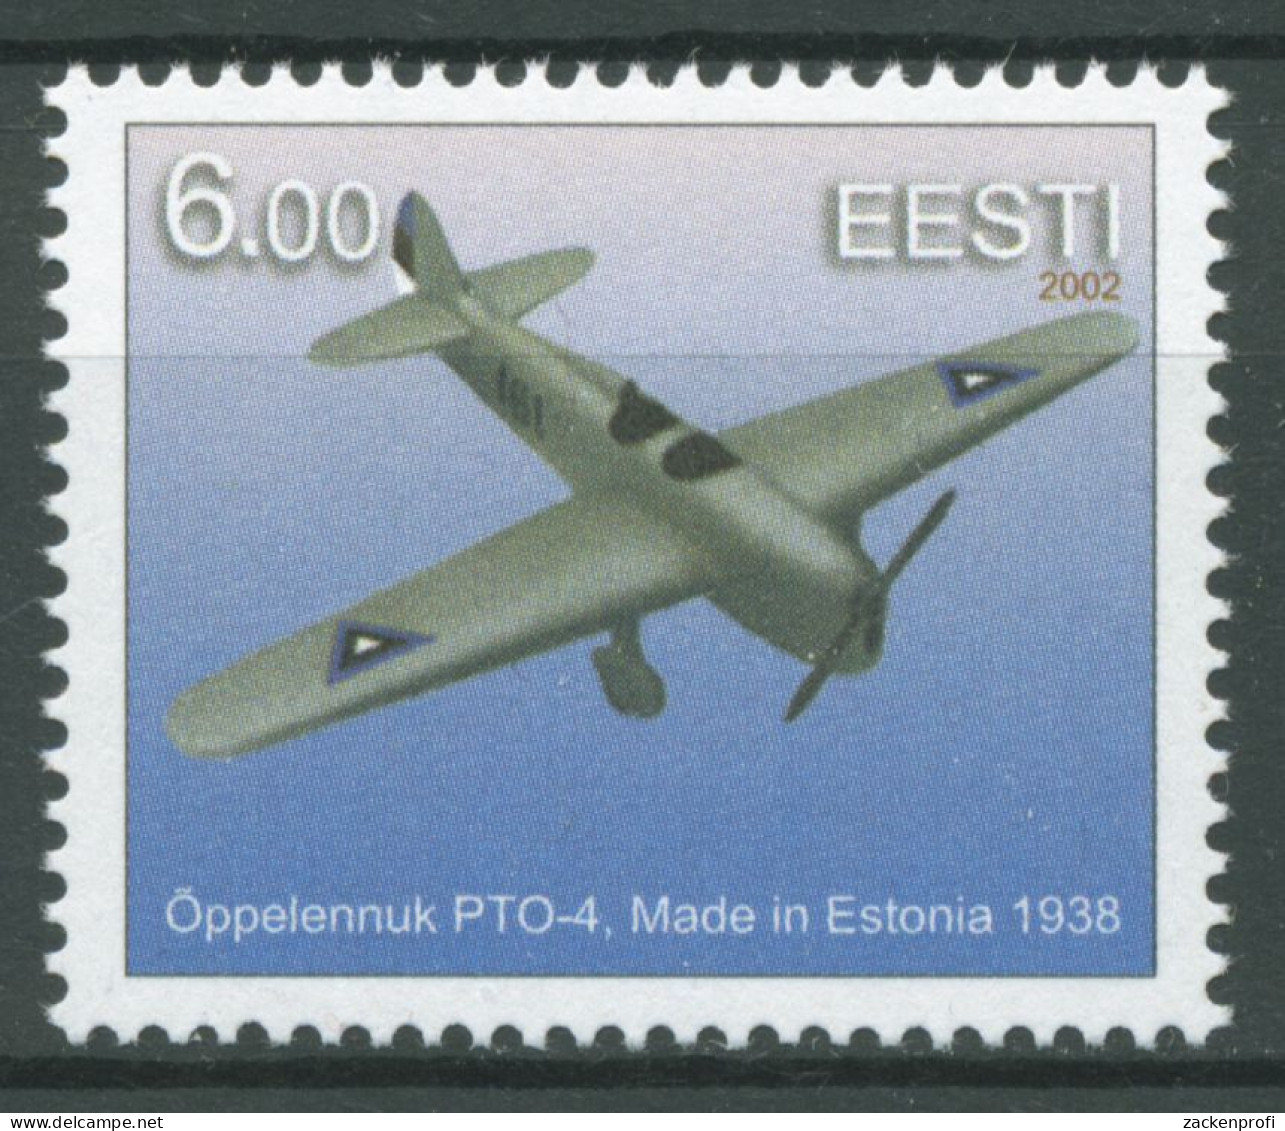 Estland 2002 Luftfahrt Schulflugzeug 433 Postfrisch - Estland